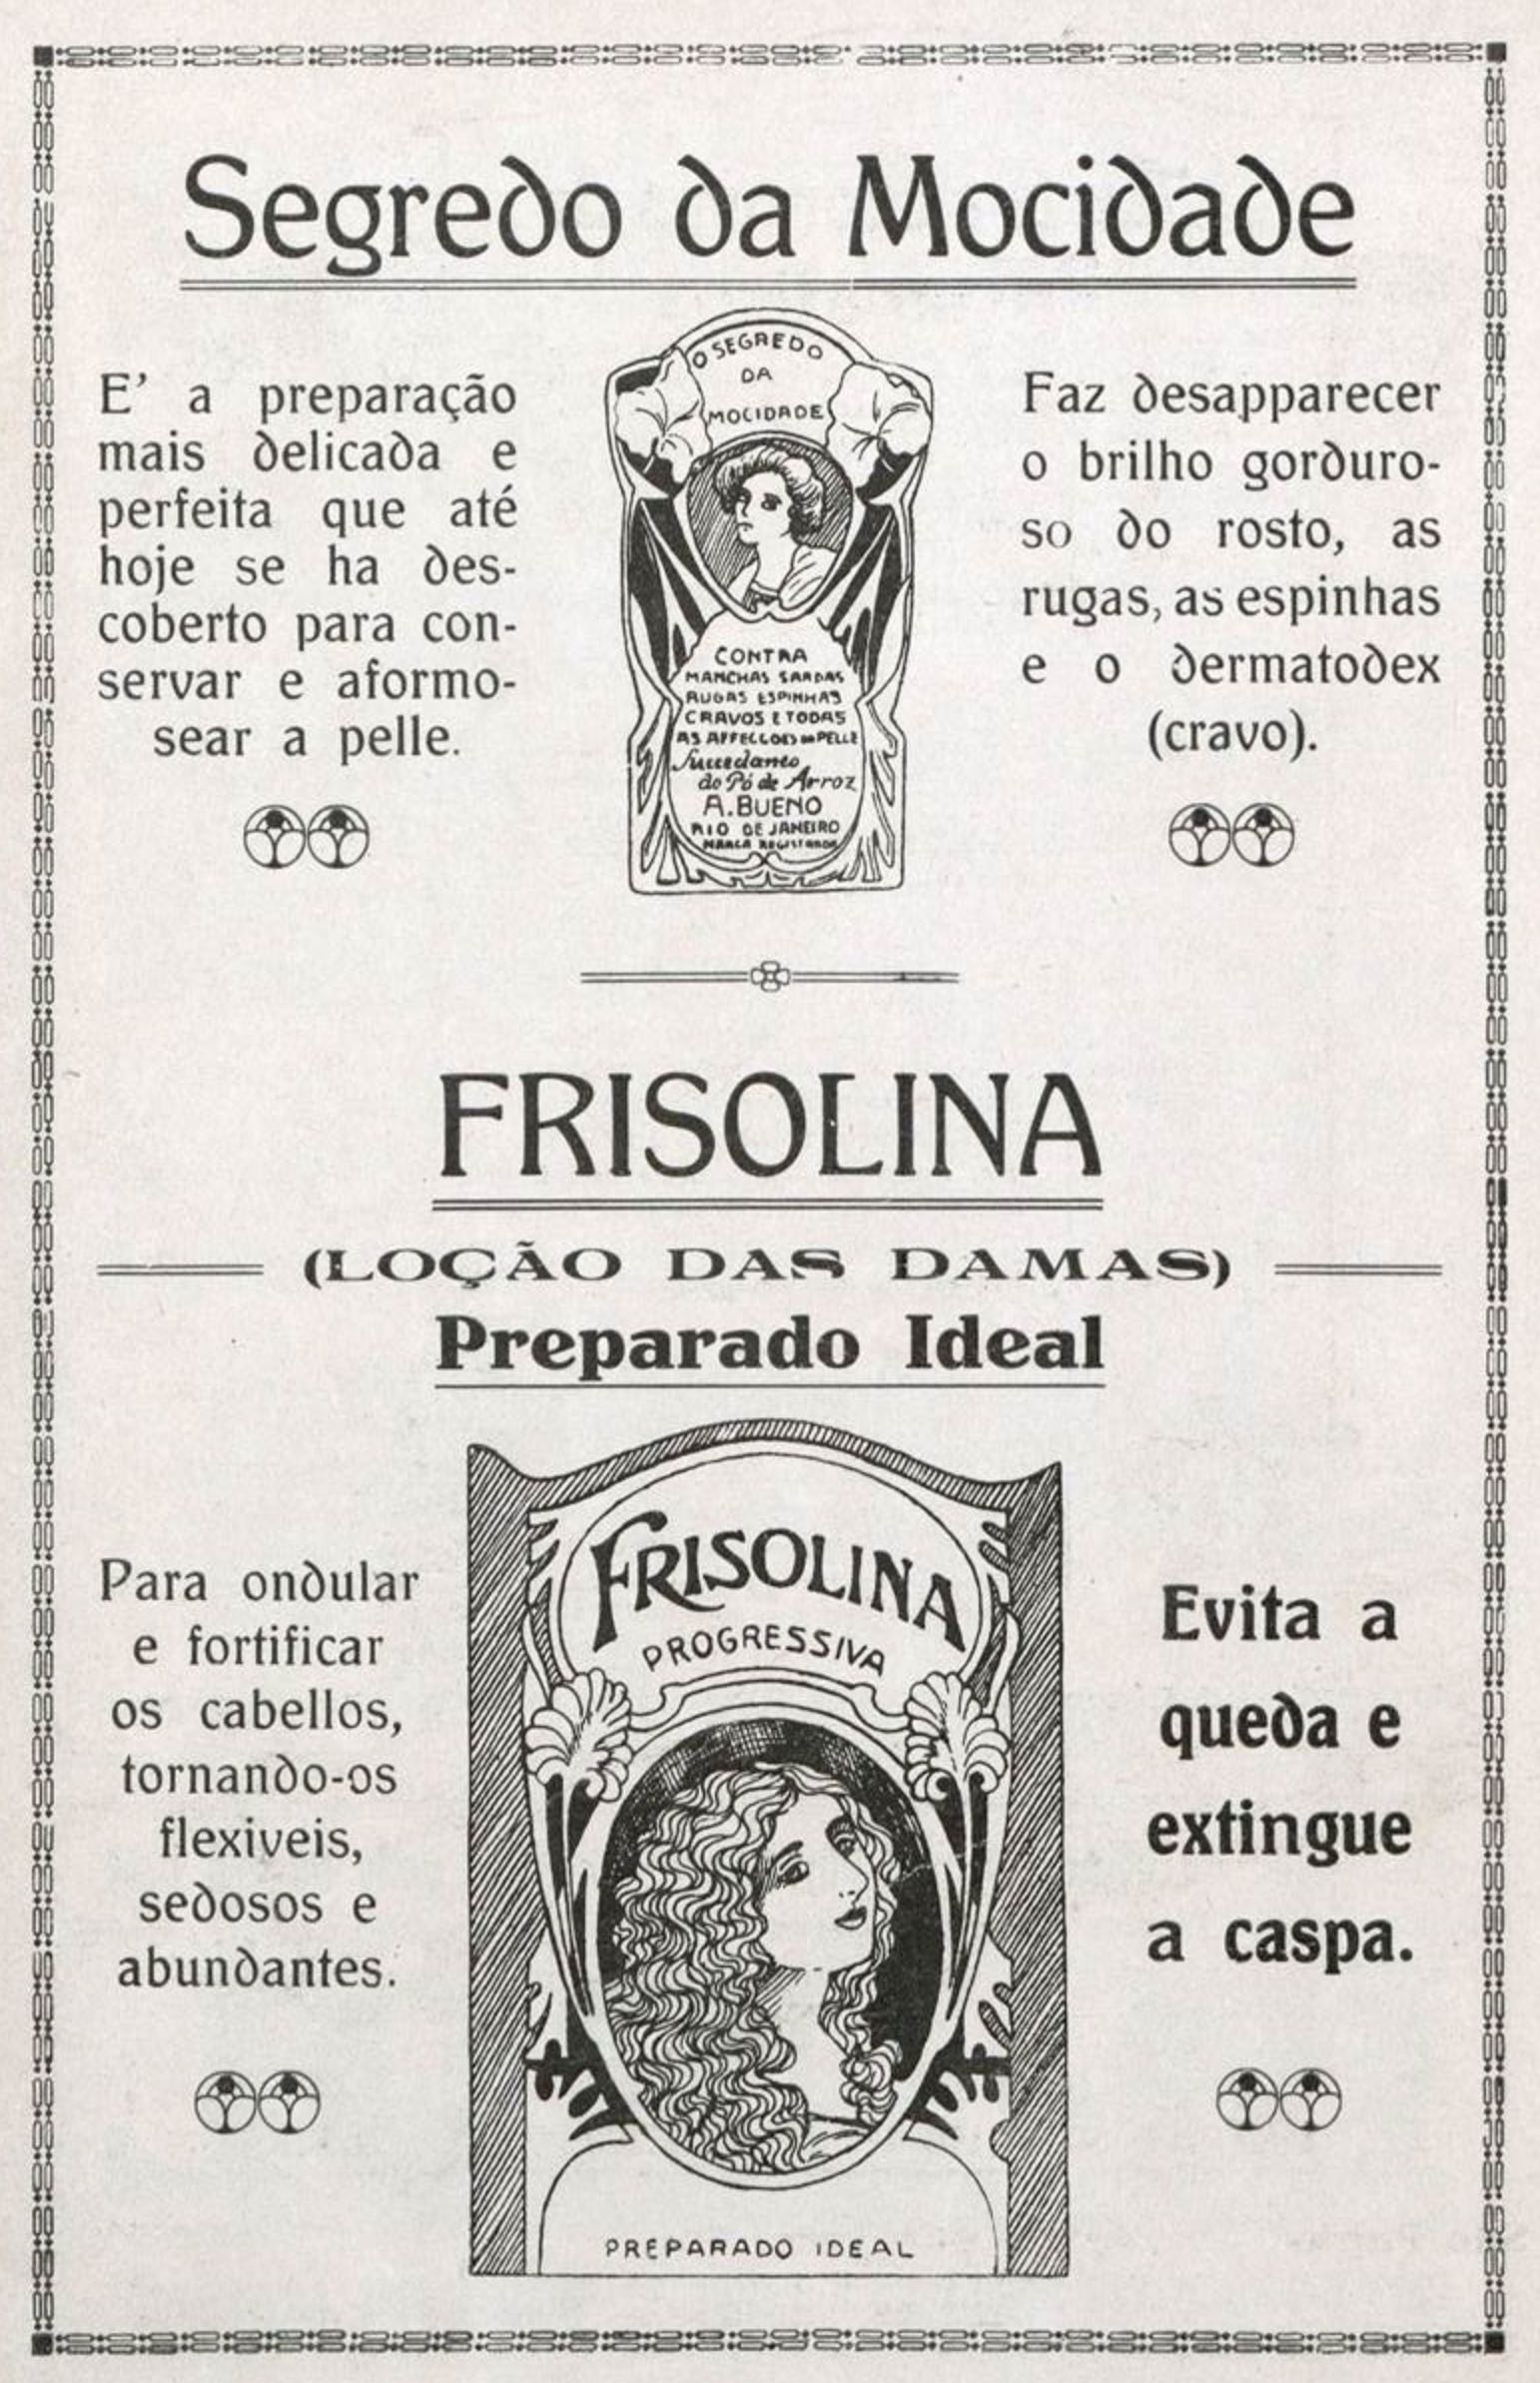 Anúncio veiculado em 1919 promovia produtos para cuidados com a pele e cabelo